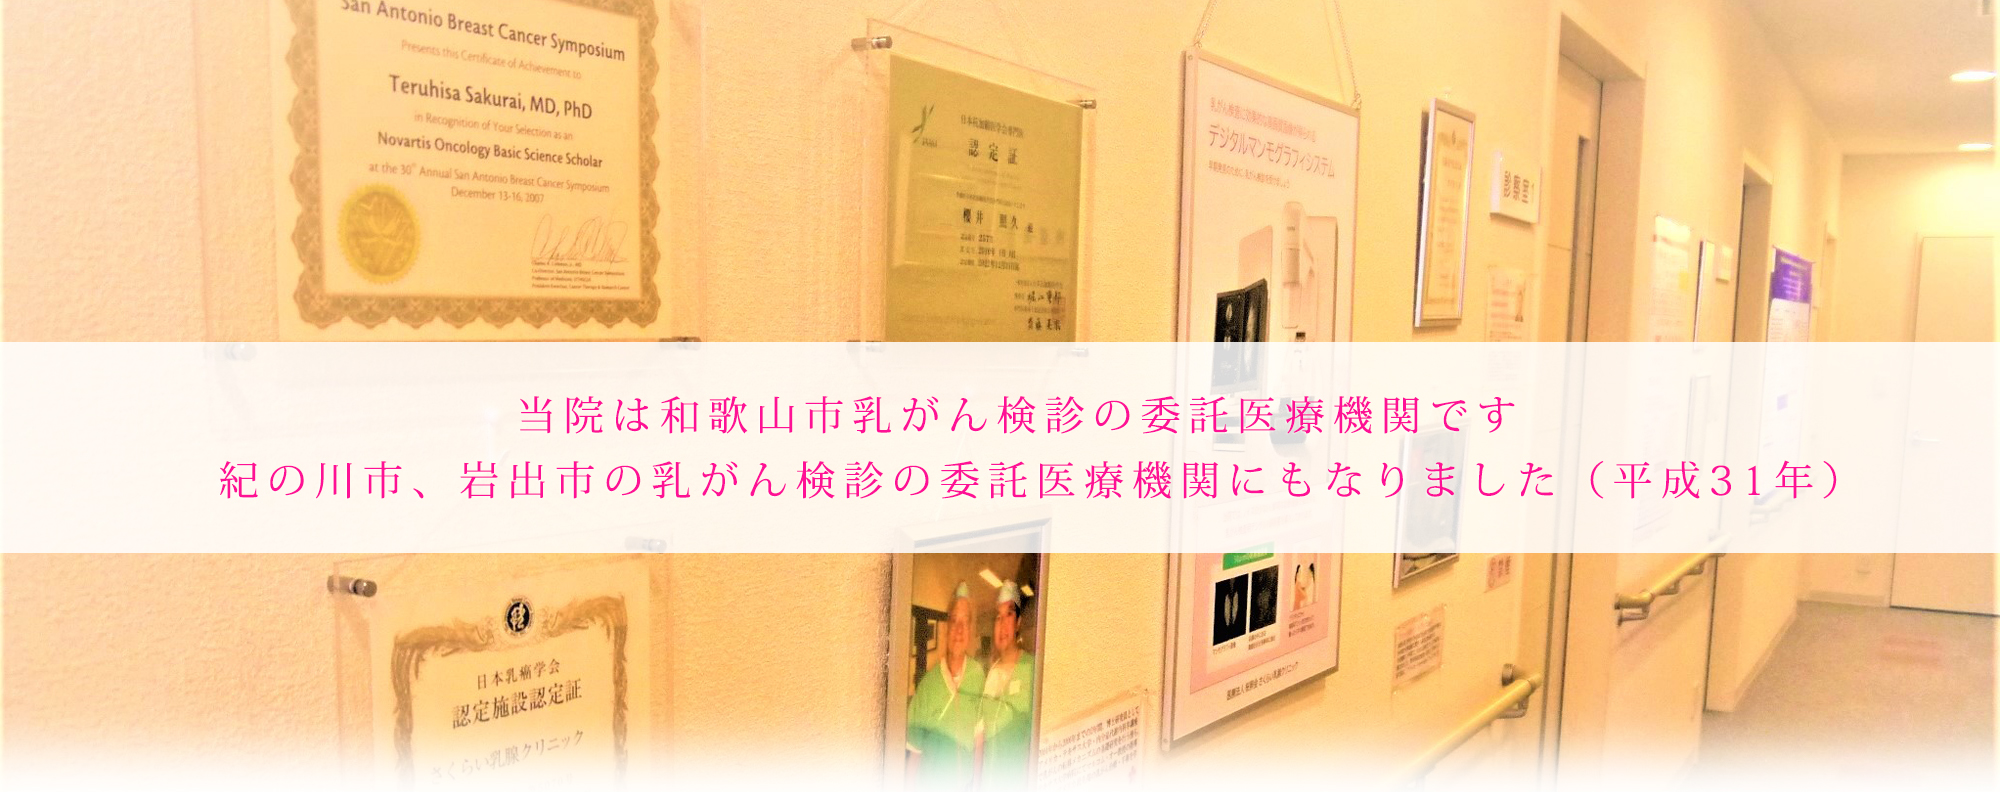 和歌山県下唯一の日本乳癌学会認定施設の乳腺専門クリニック